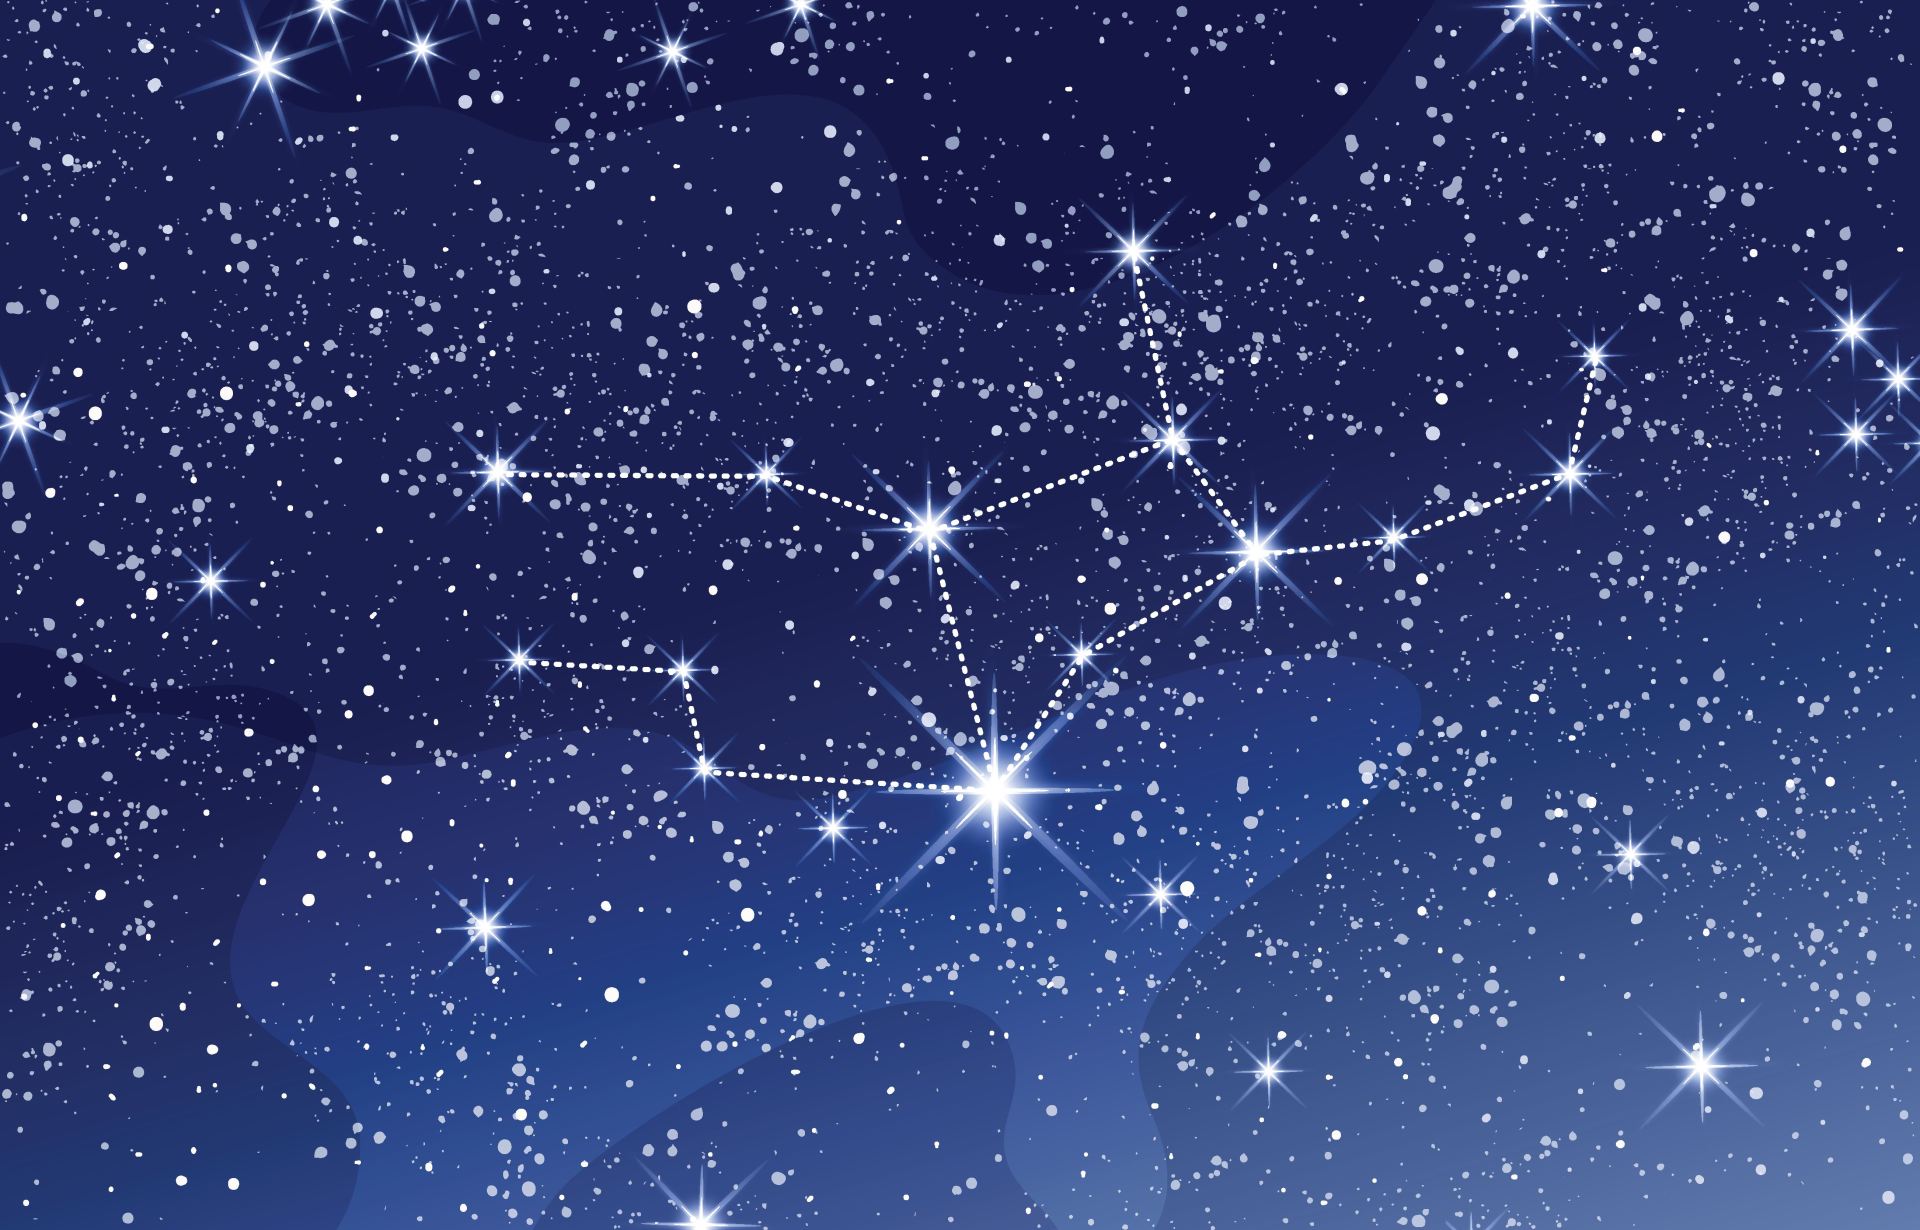 Virgo Constellation In Blue Night sky